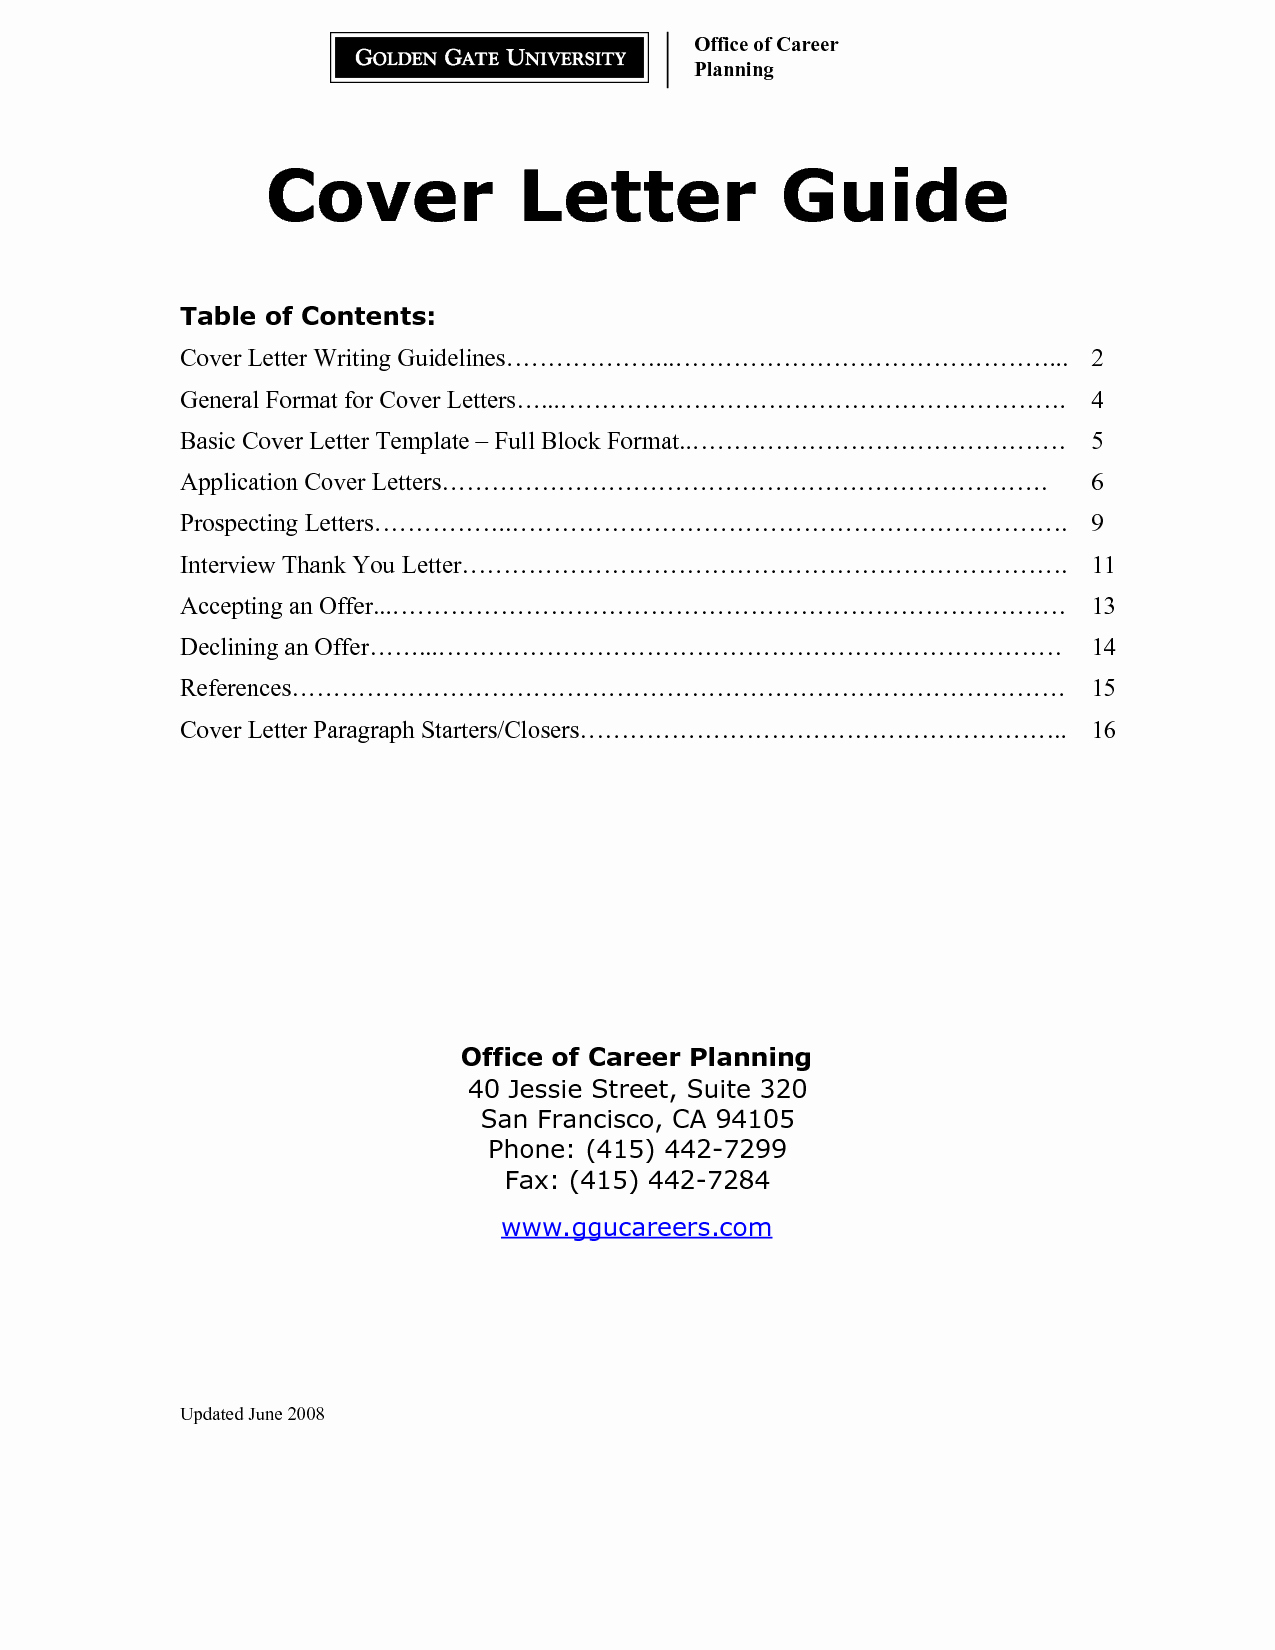 Standard Cover Letter for Resume